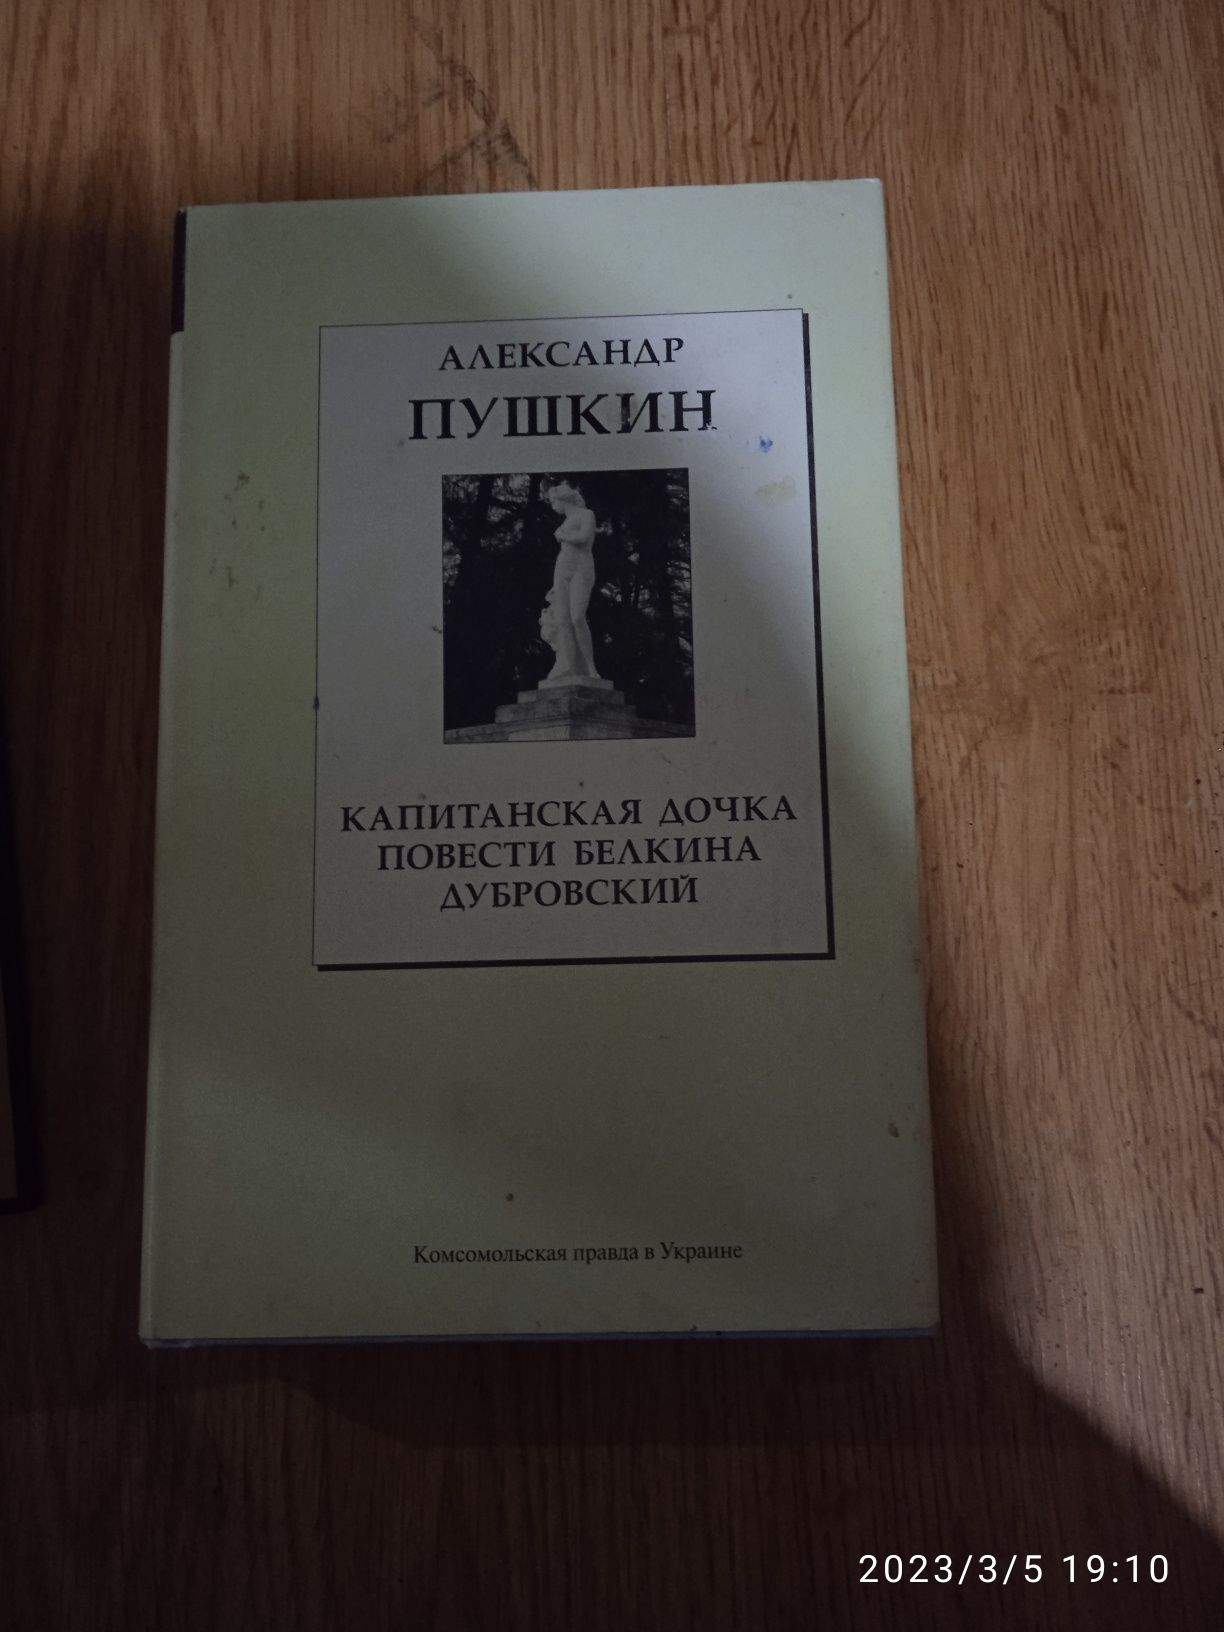 збірник оповідань Пушкіна і Євген Онегін на додачу.